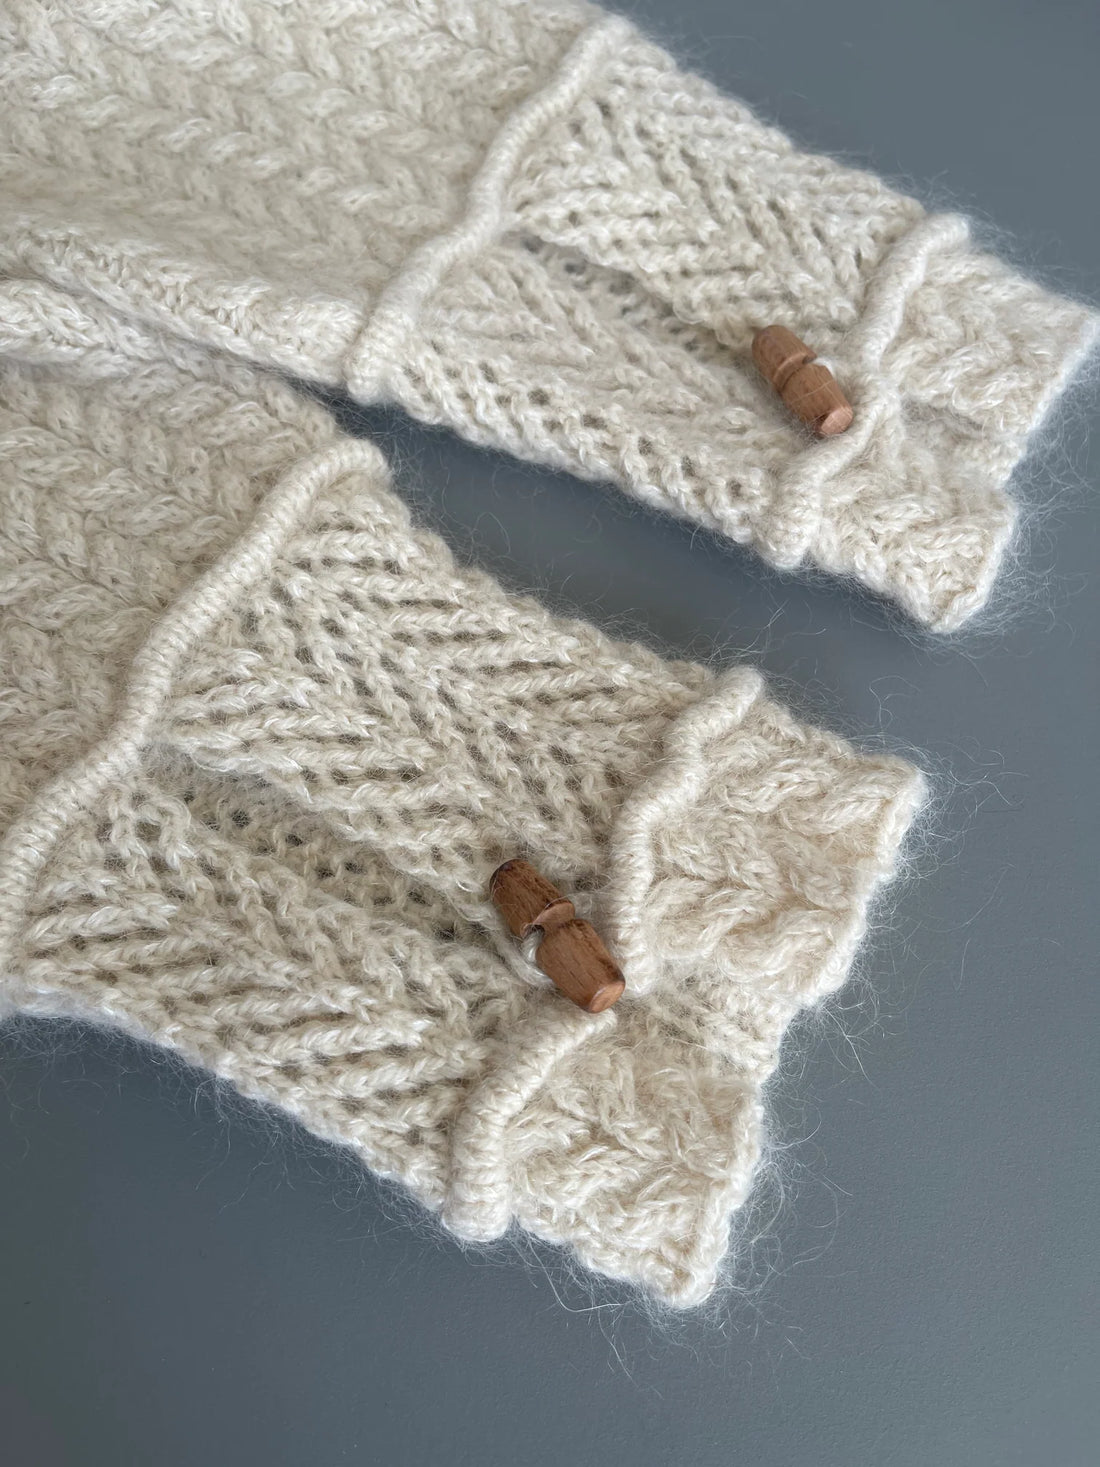 Aegyo Knit - Sarang Sweater